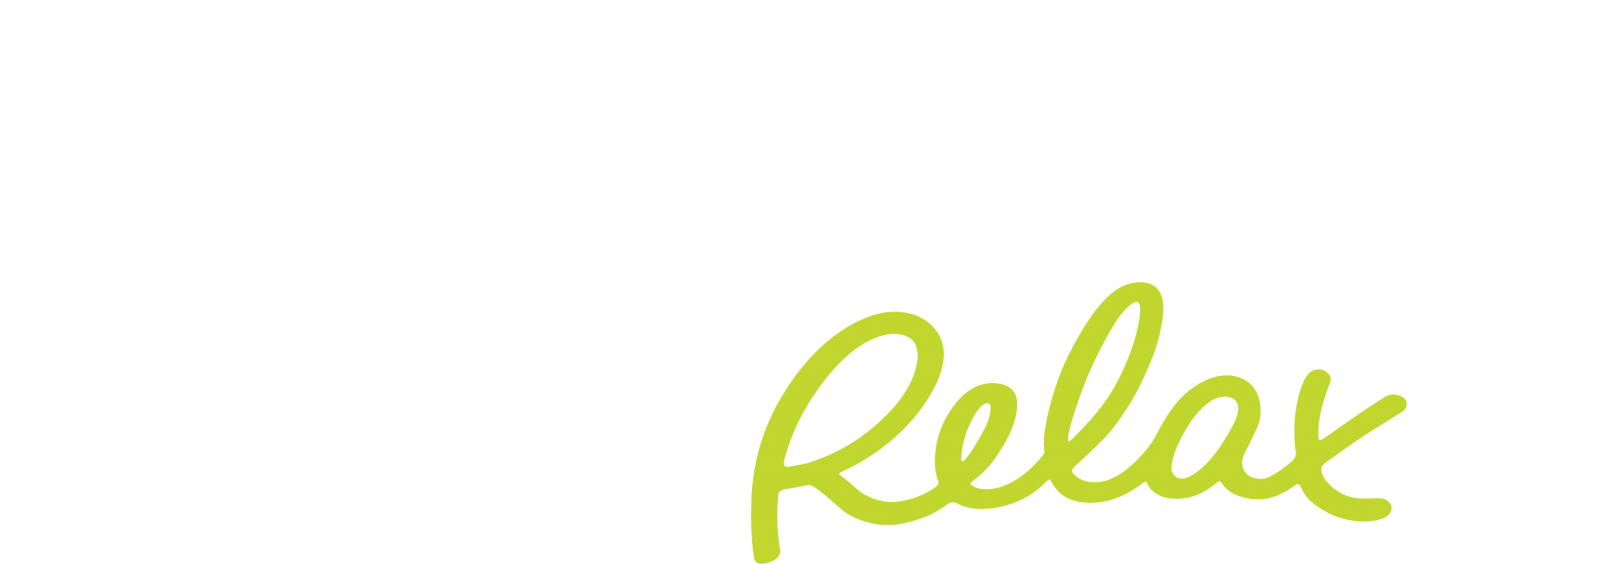 Logotipo Borocanfor Relax diapo